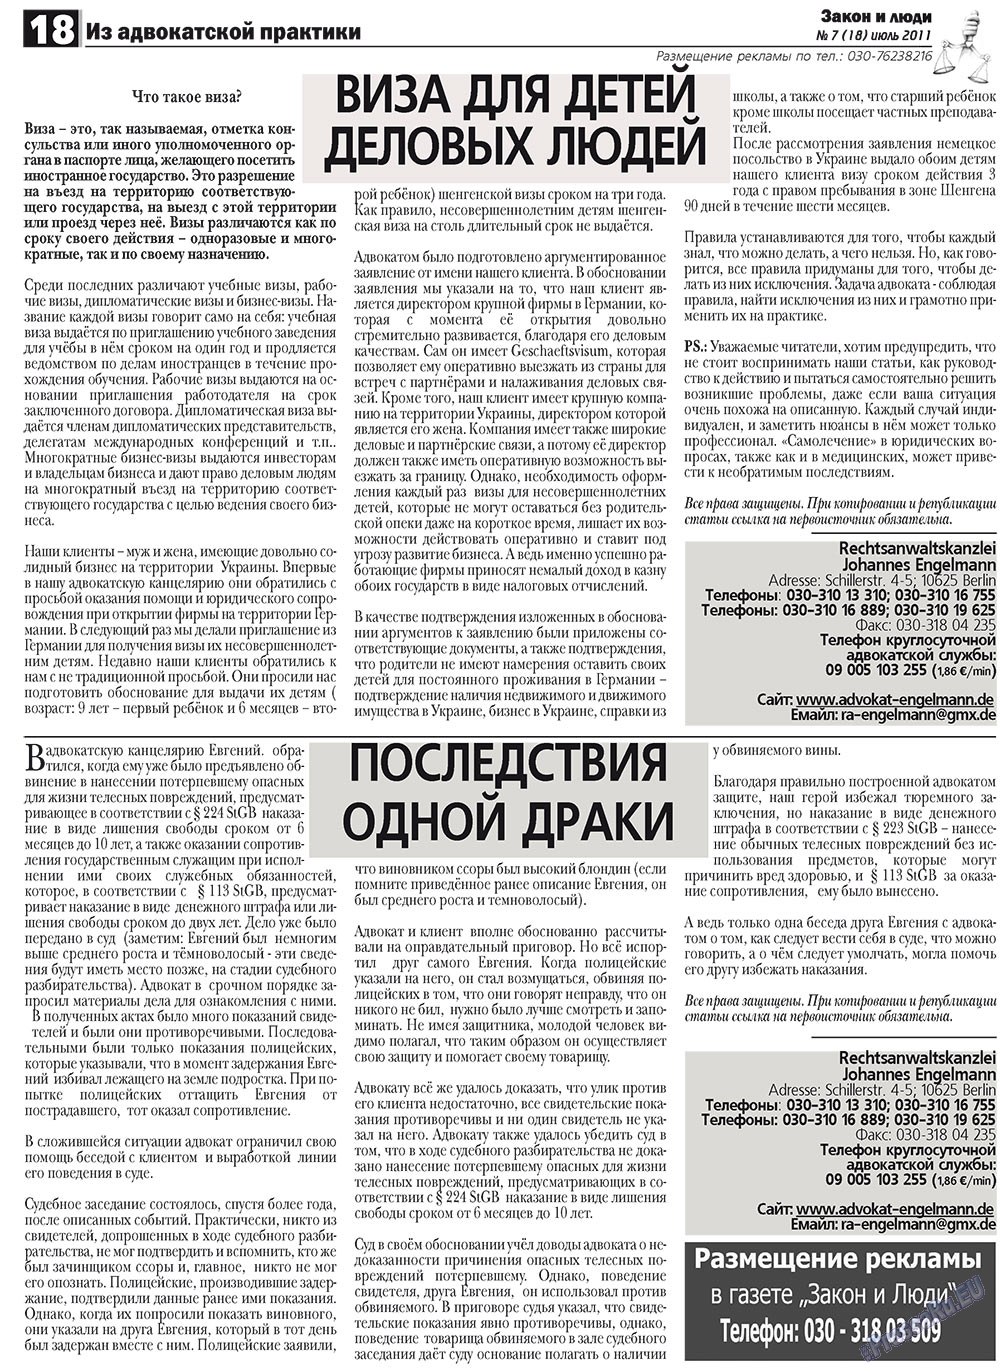 Закон и люди, газета. 2011 №7 стр.18